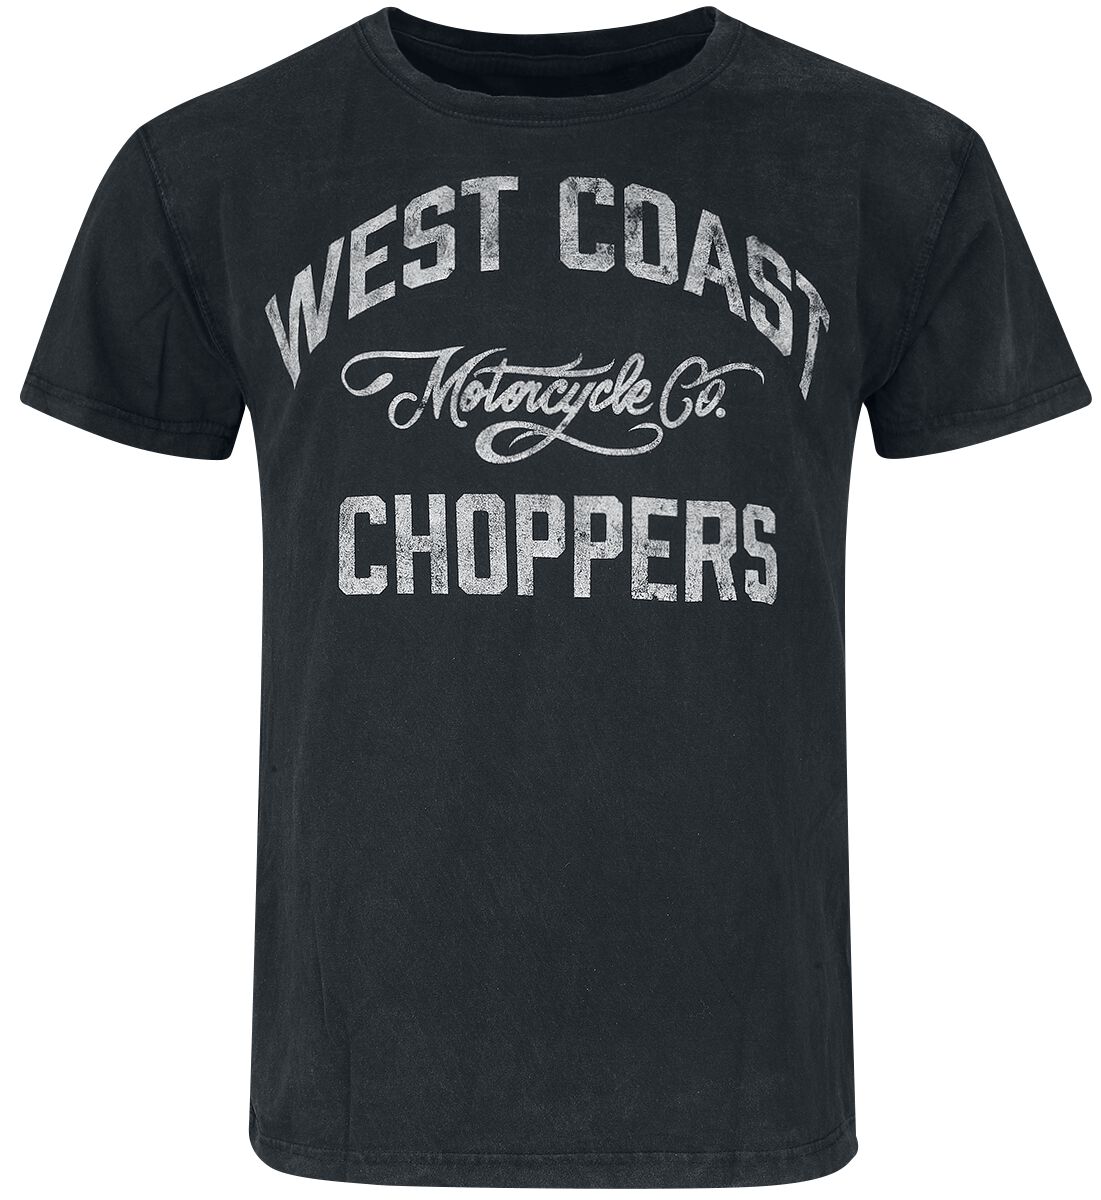 West Coast Choppers T-Shirt - Motorcycle Co. - S bis 3XL - für Männer - Größe XXL - schwarz